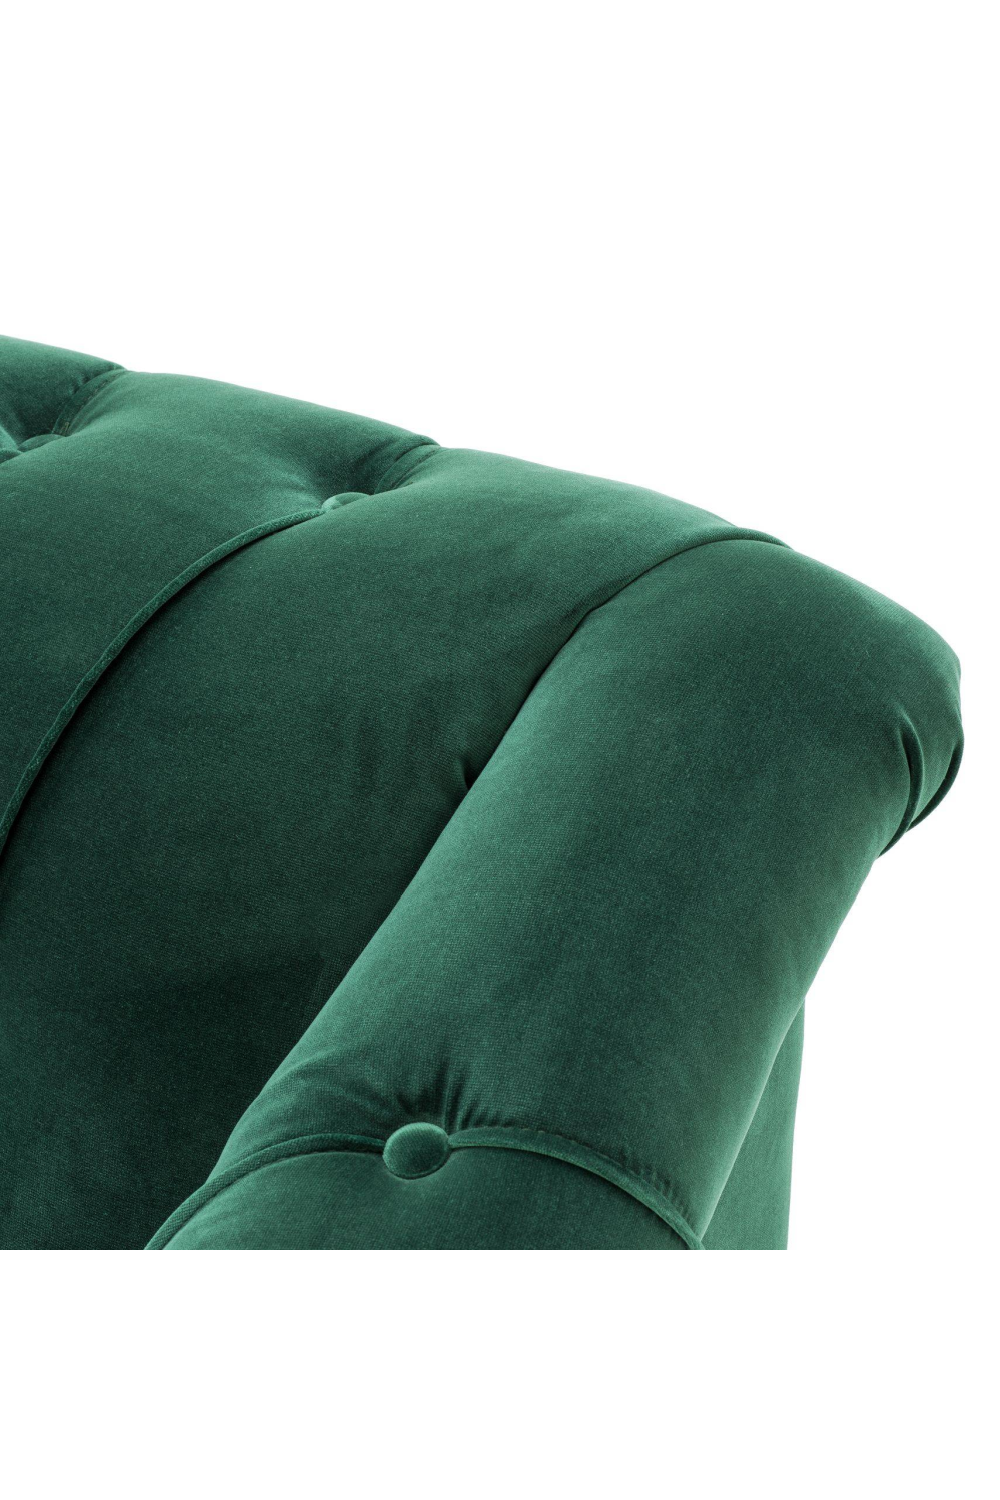 Tufted Green Accent Chair | Eichholtz Brian | Oroa.com